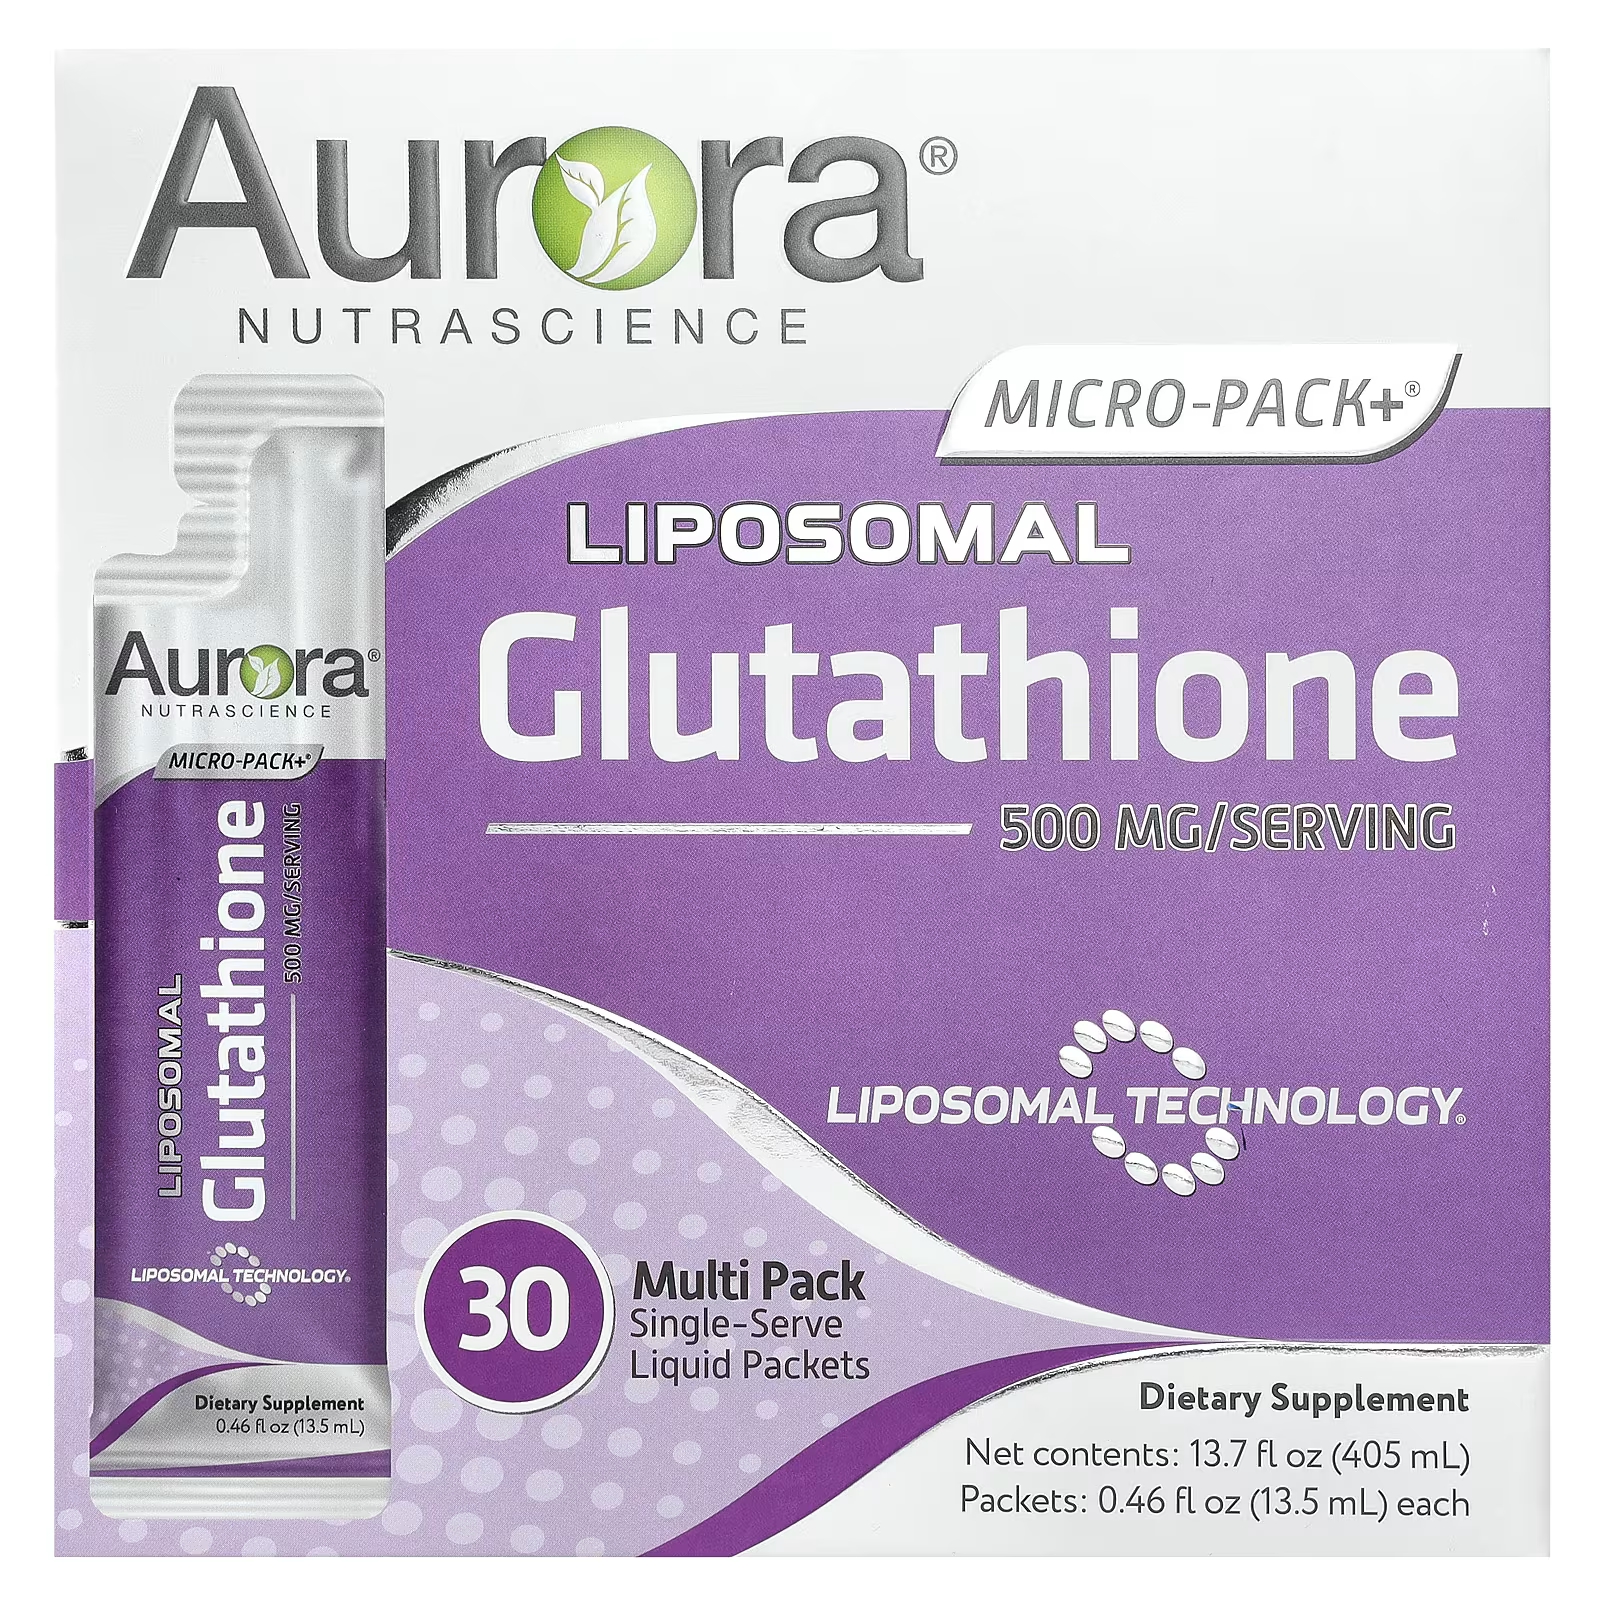 Aurora Nutrascience Micro-Pack+ липосомальный глутатион 500 мг 30 одноразовых пакетов с жидкостью по 0,46 жидких унций (13,5 мл) каждый